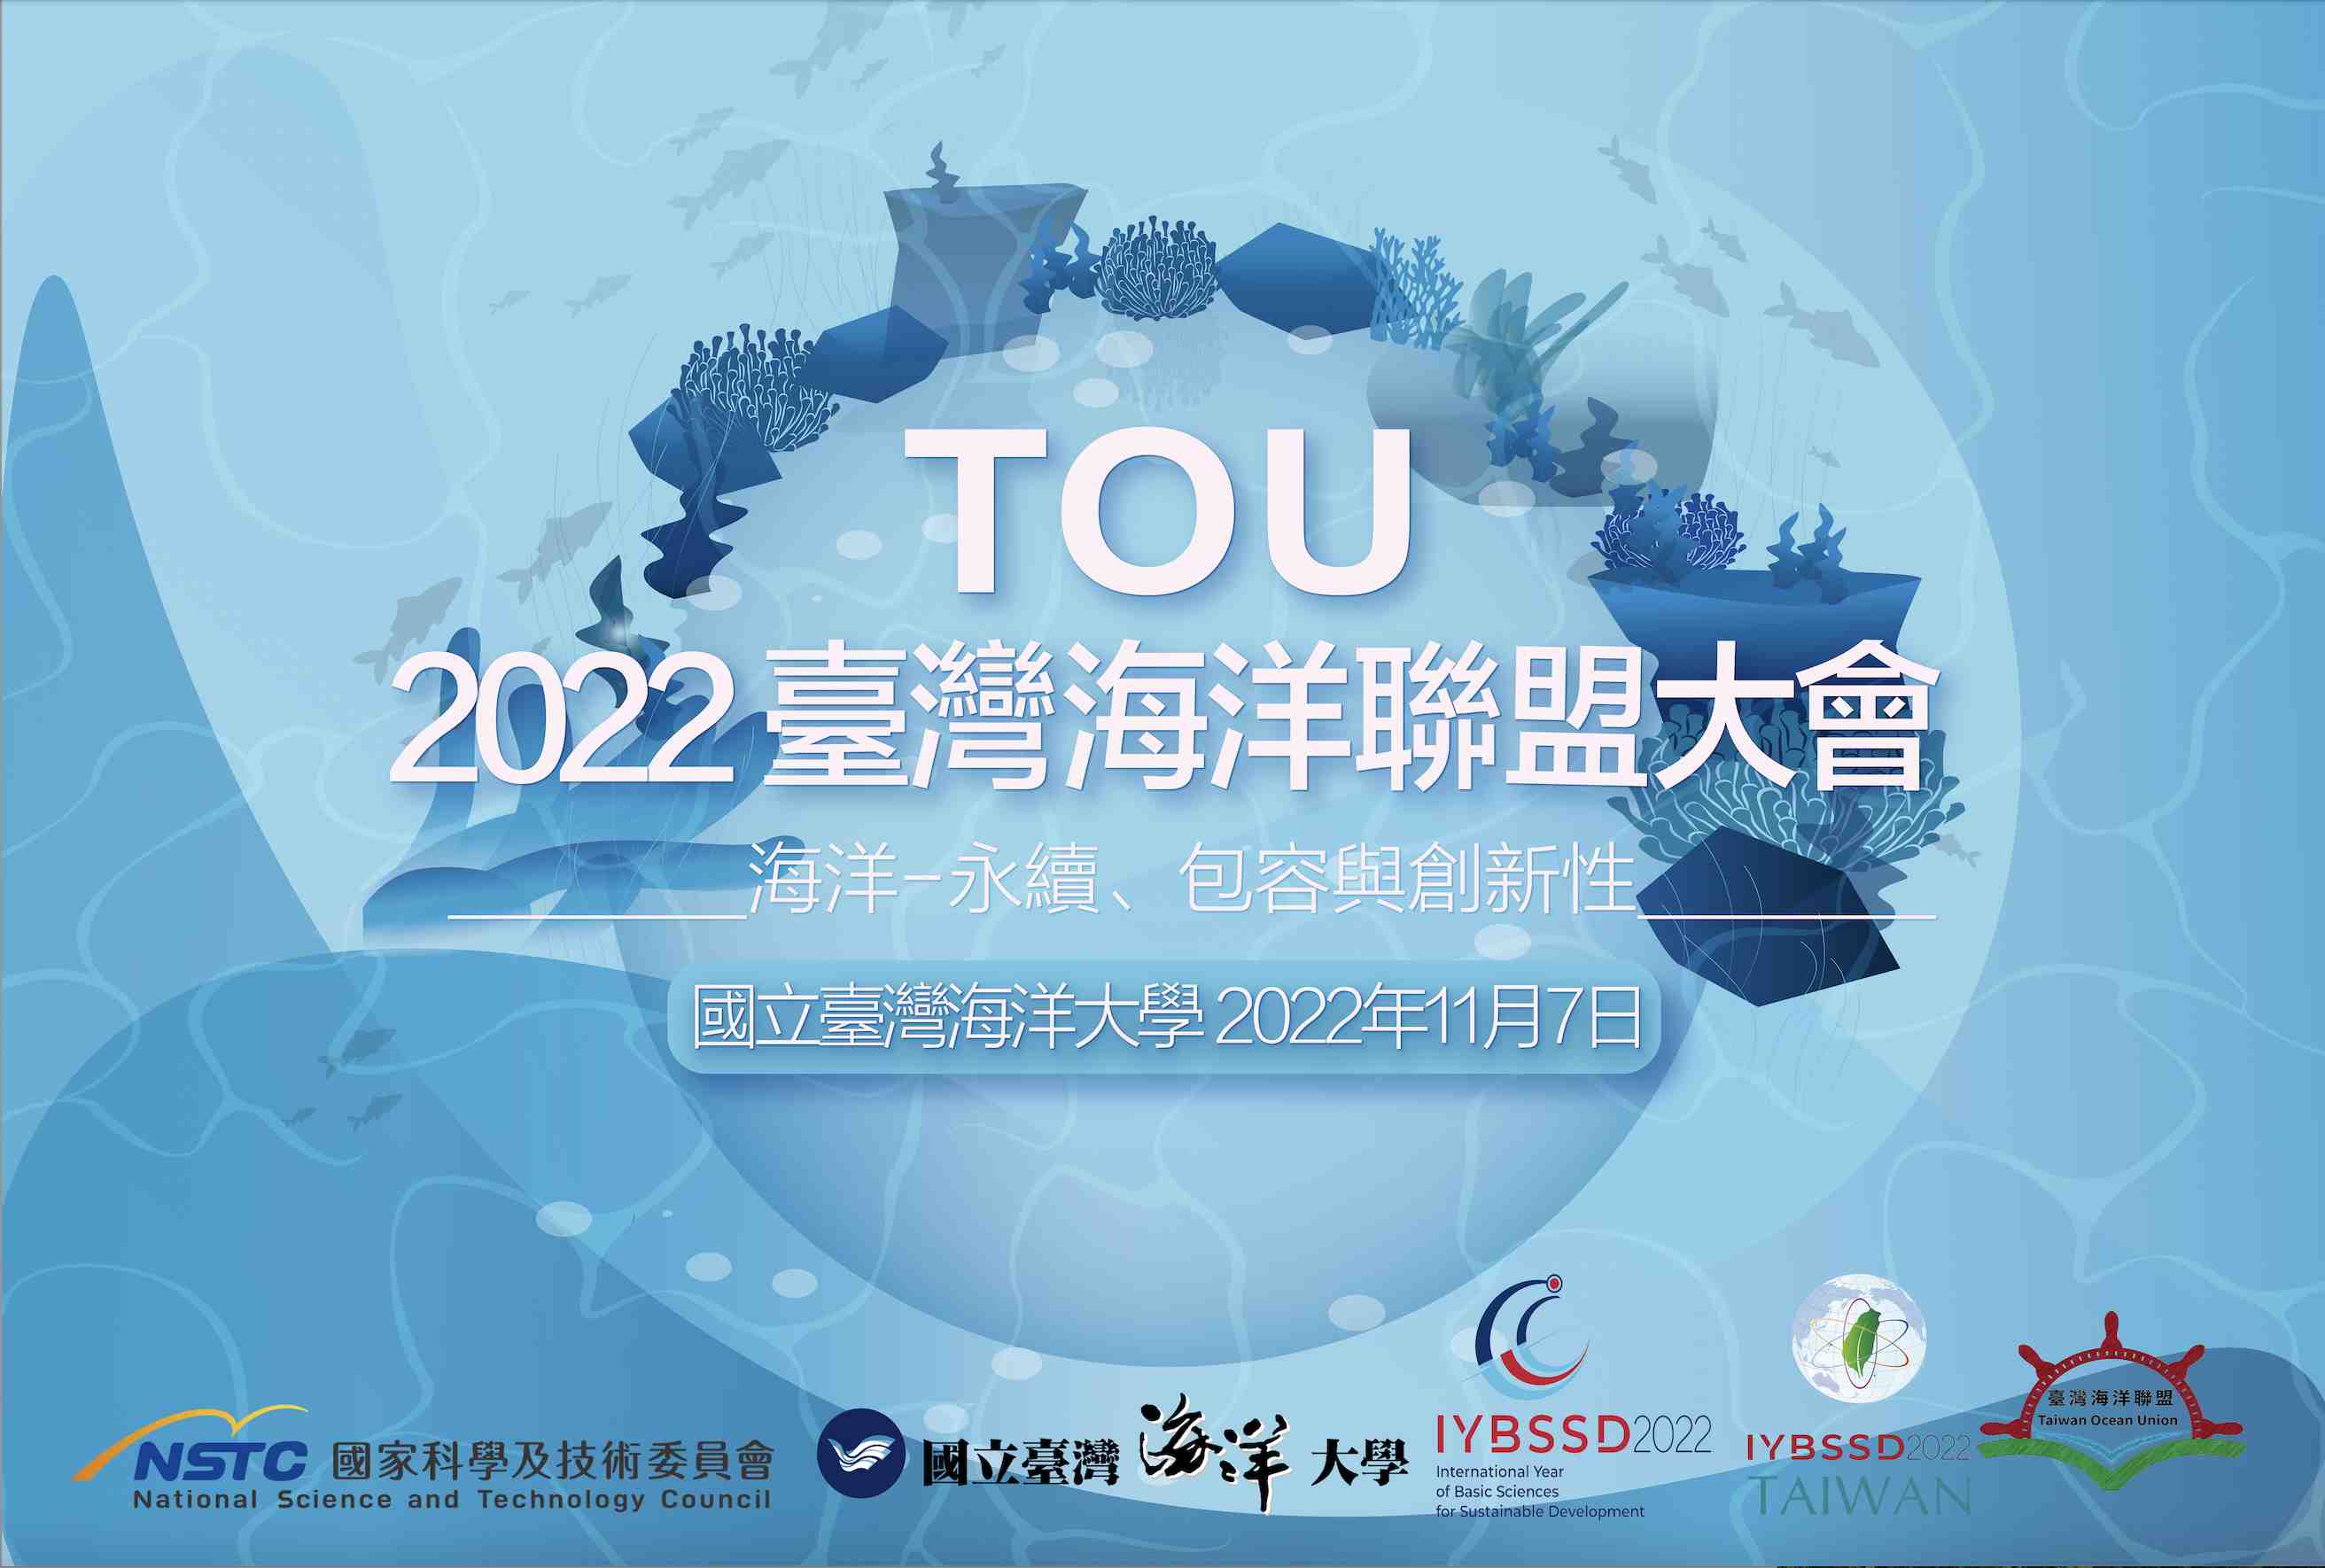 2022年臺灣海洋聯盟大會宣傳用圖片/海報